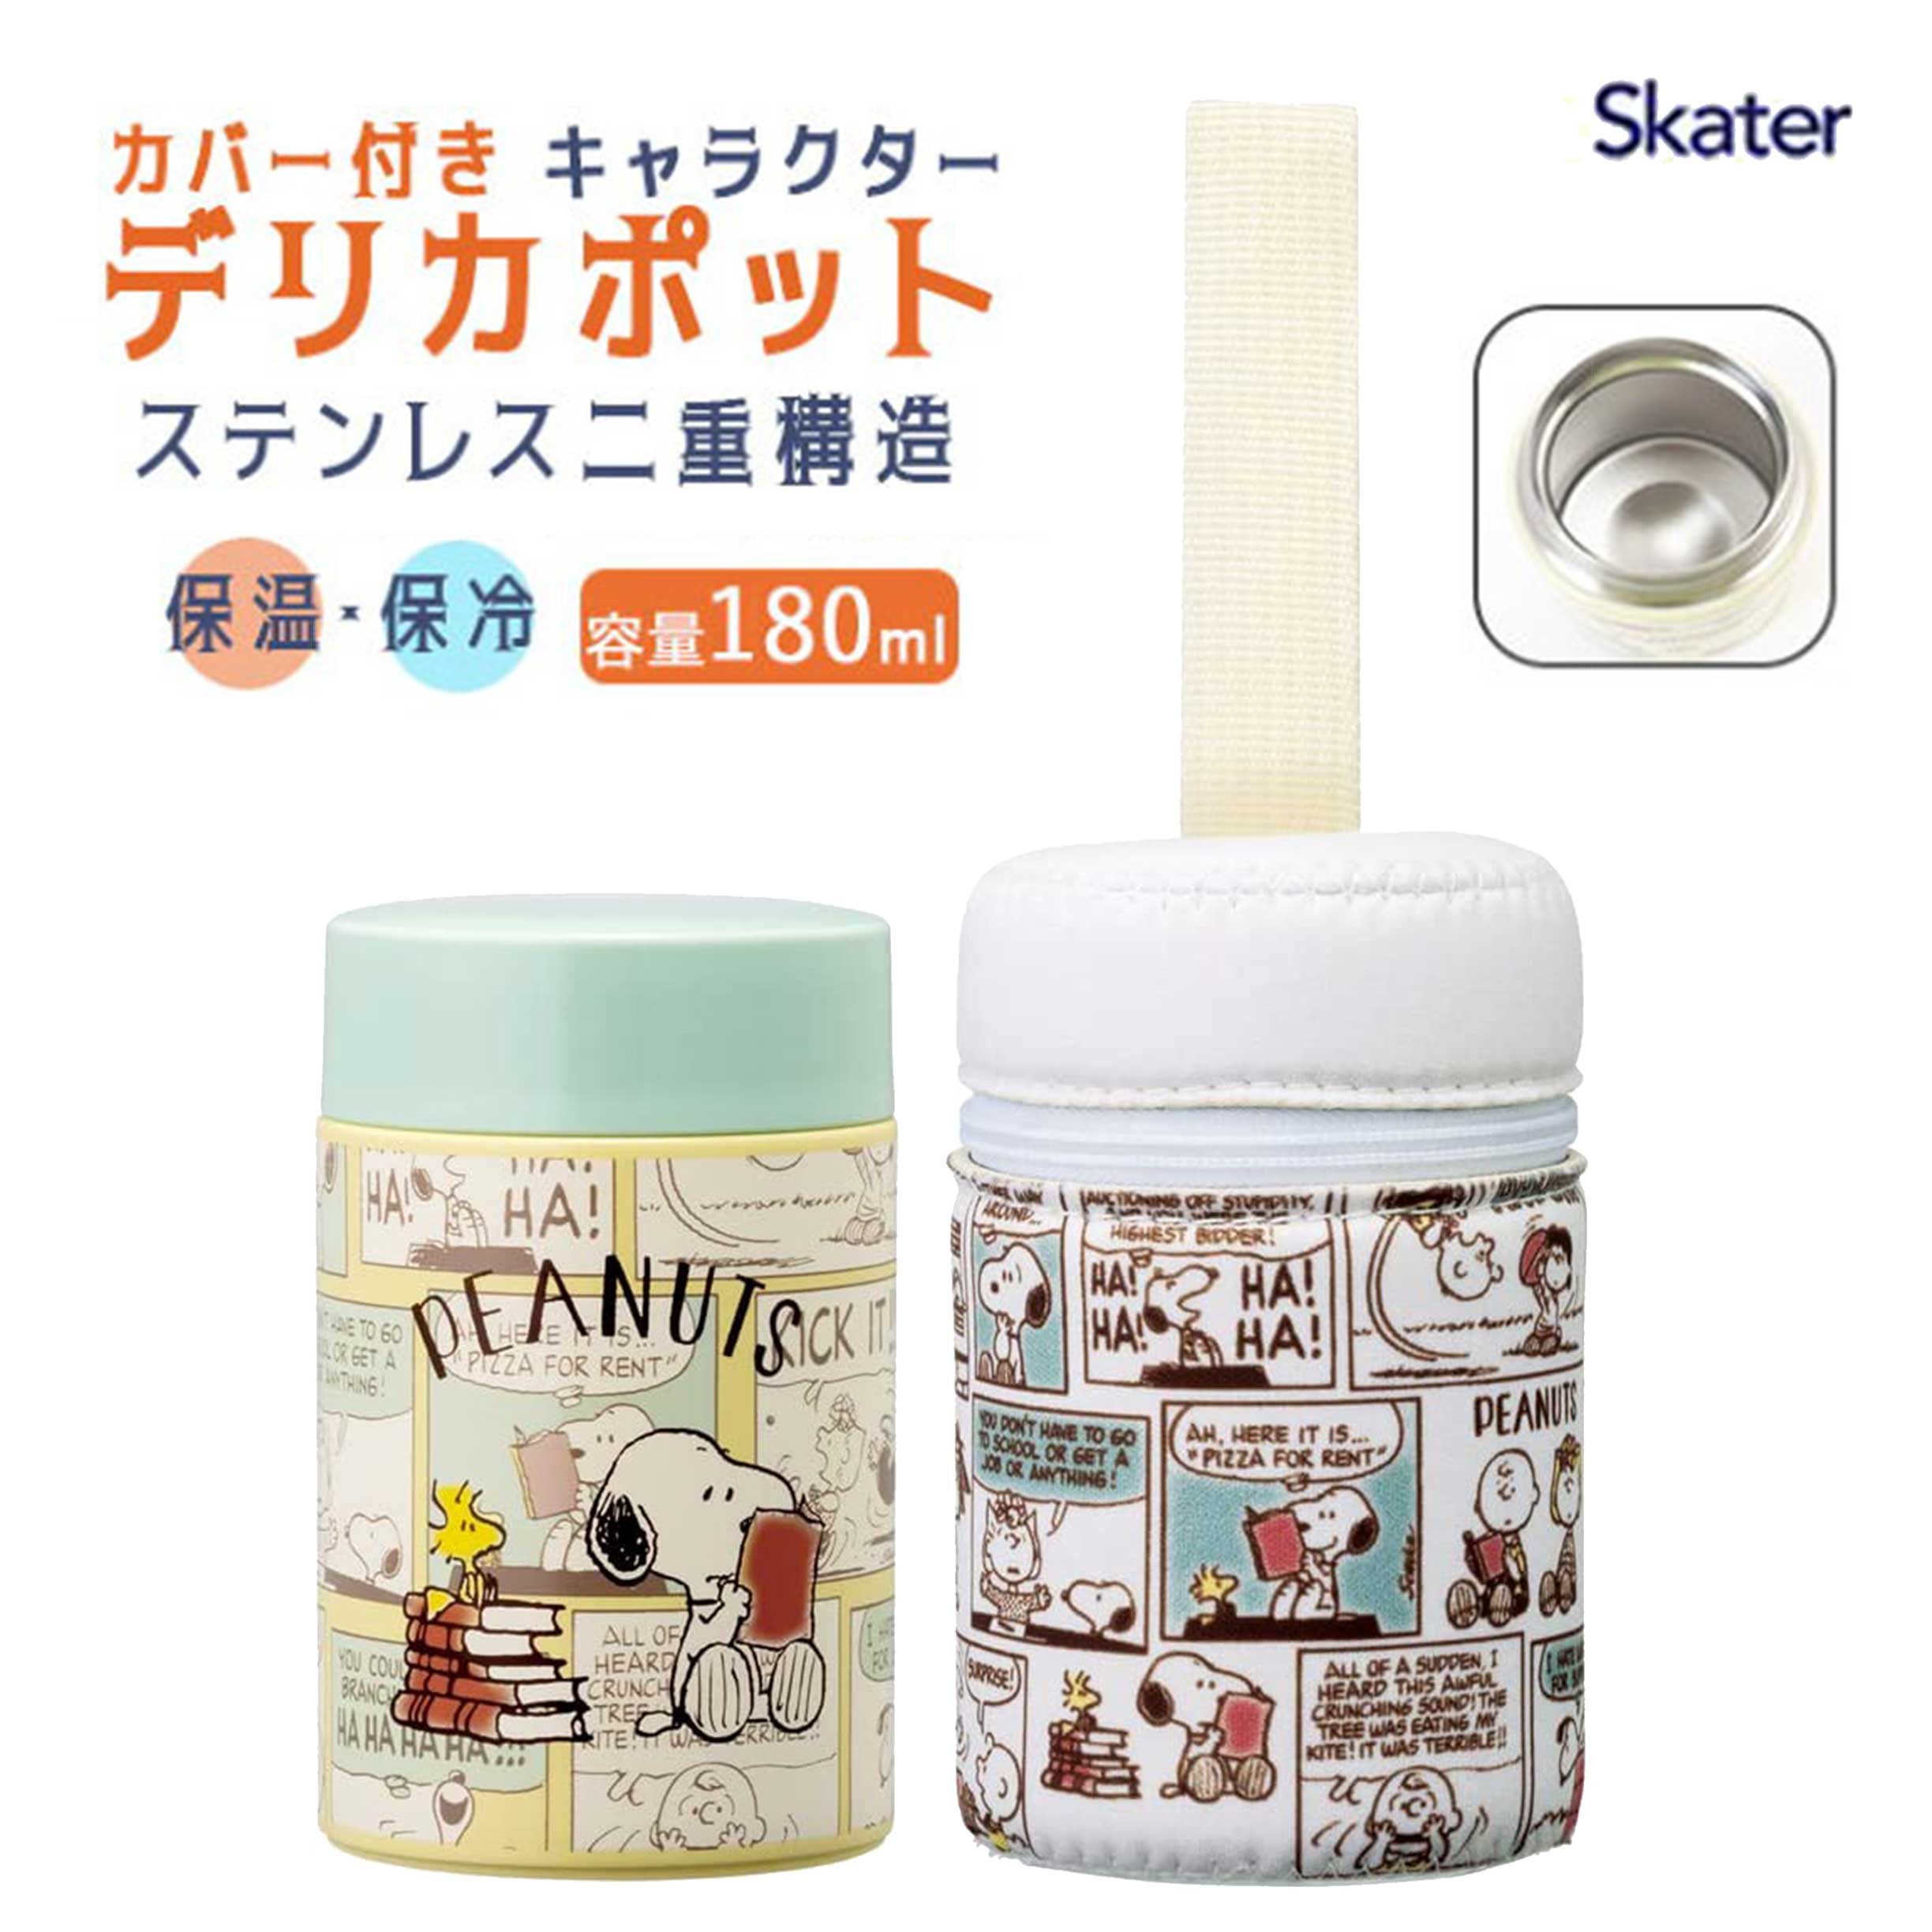 迷你真空保溫罐 180ml-史努比 SNOOPY PEANUTS Skater 日本進口正版授權